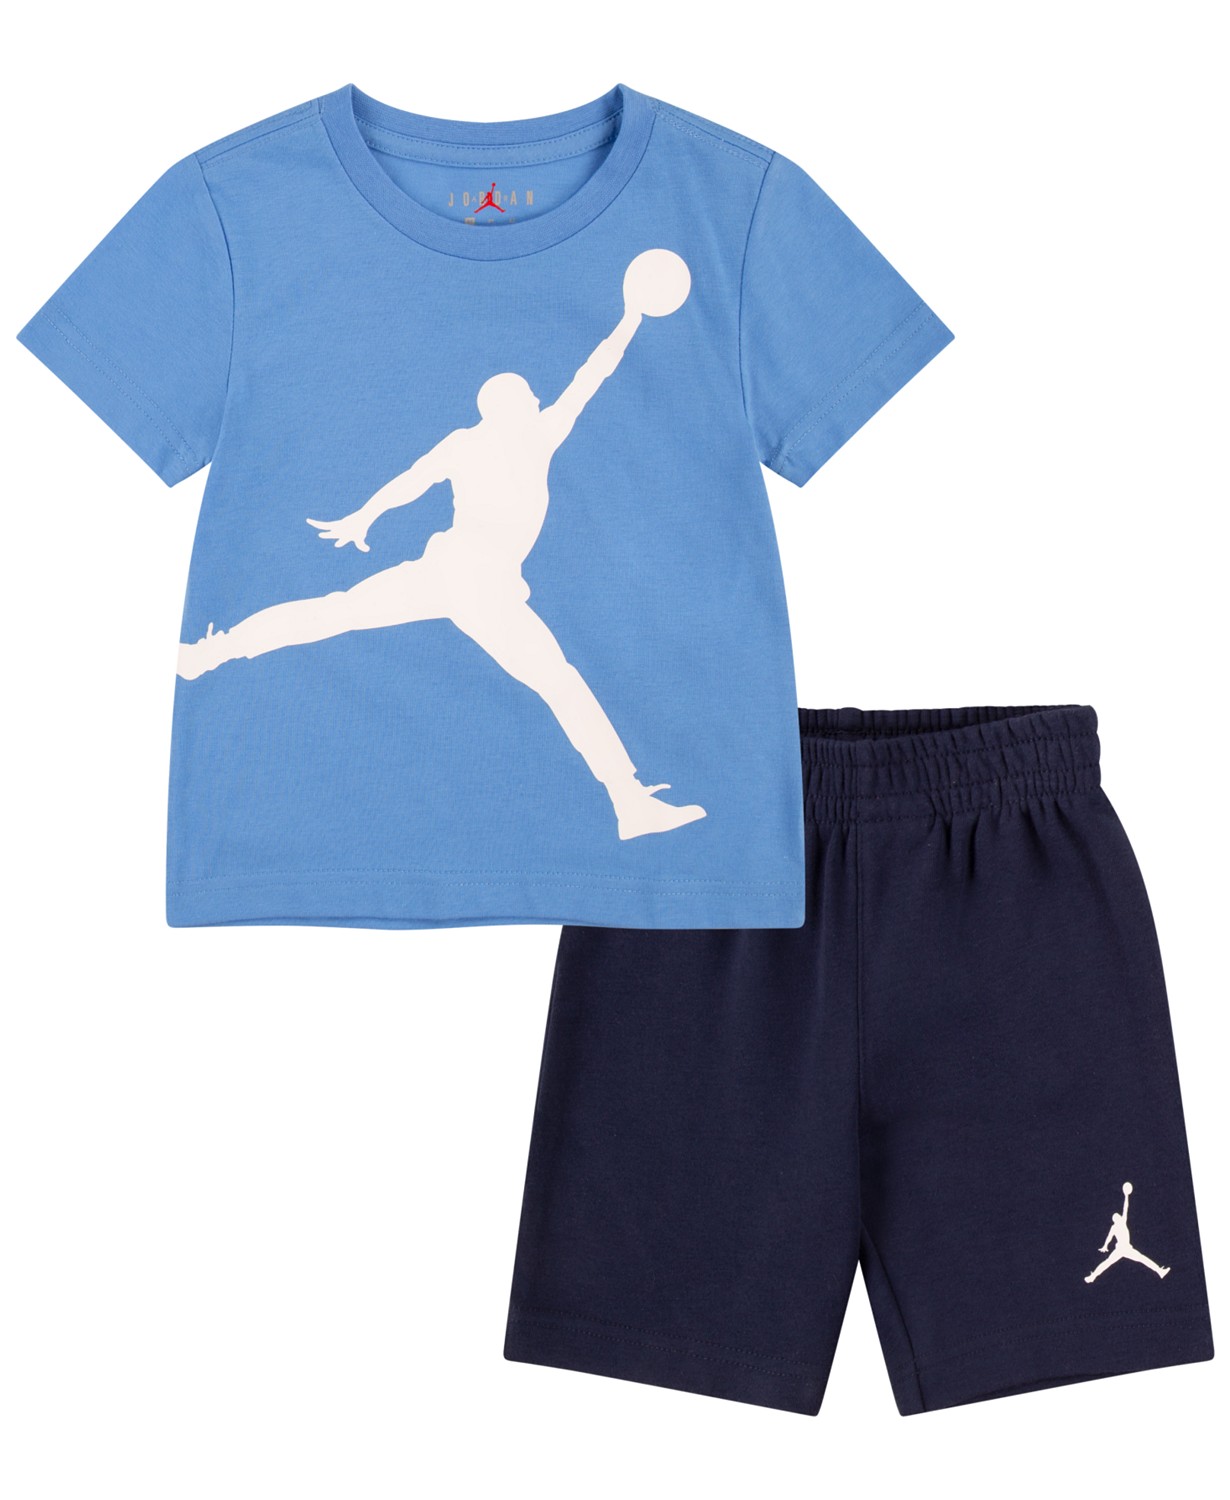 조던 Toddler Boys Jumbo Jumpman T-shirt and Shorts 2 Piece Set